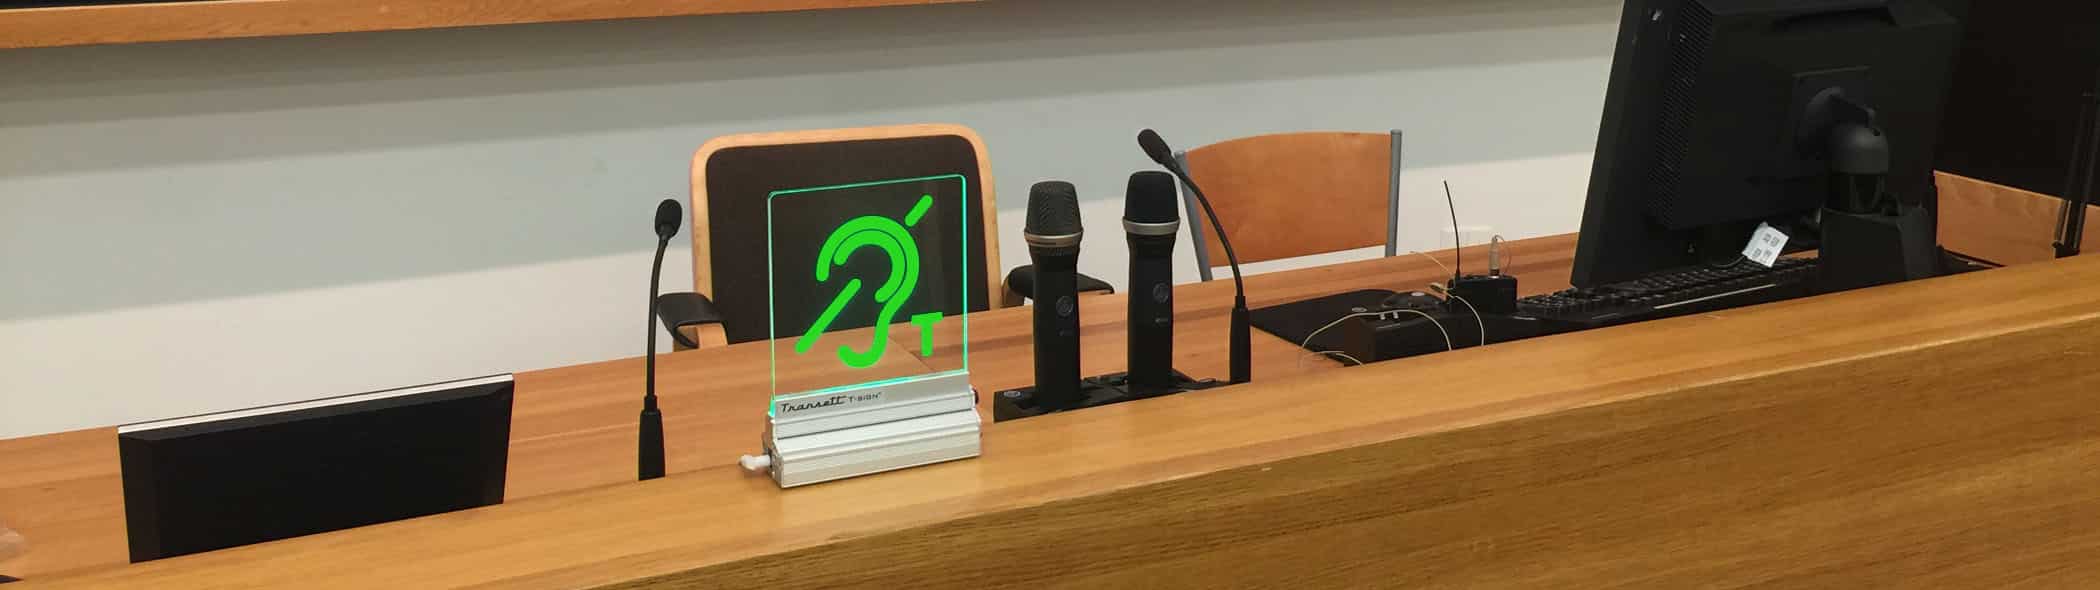 Närbild av T-sign monterat på ett bord intill några mikrofoner, datorskärmar och stolar i en föreläsningsmiljö